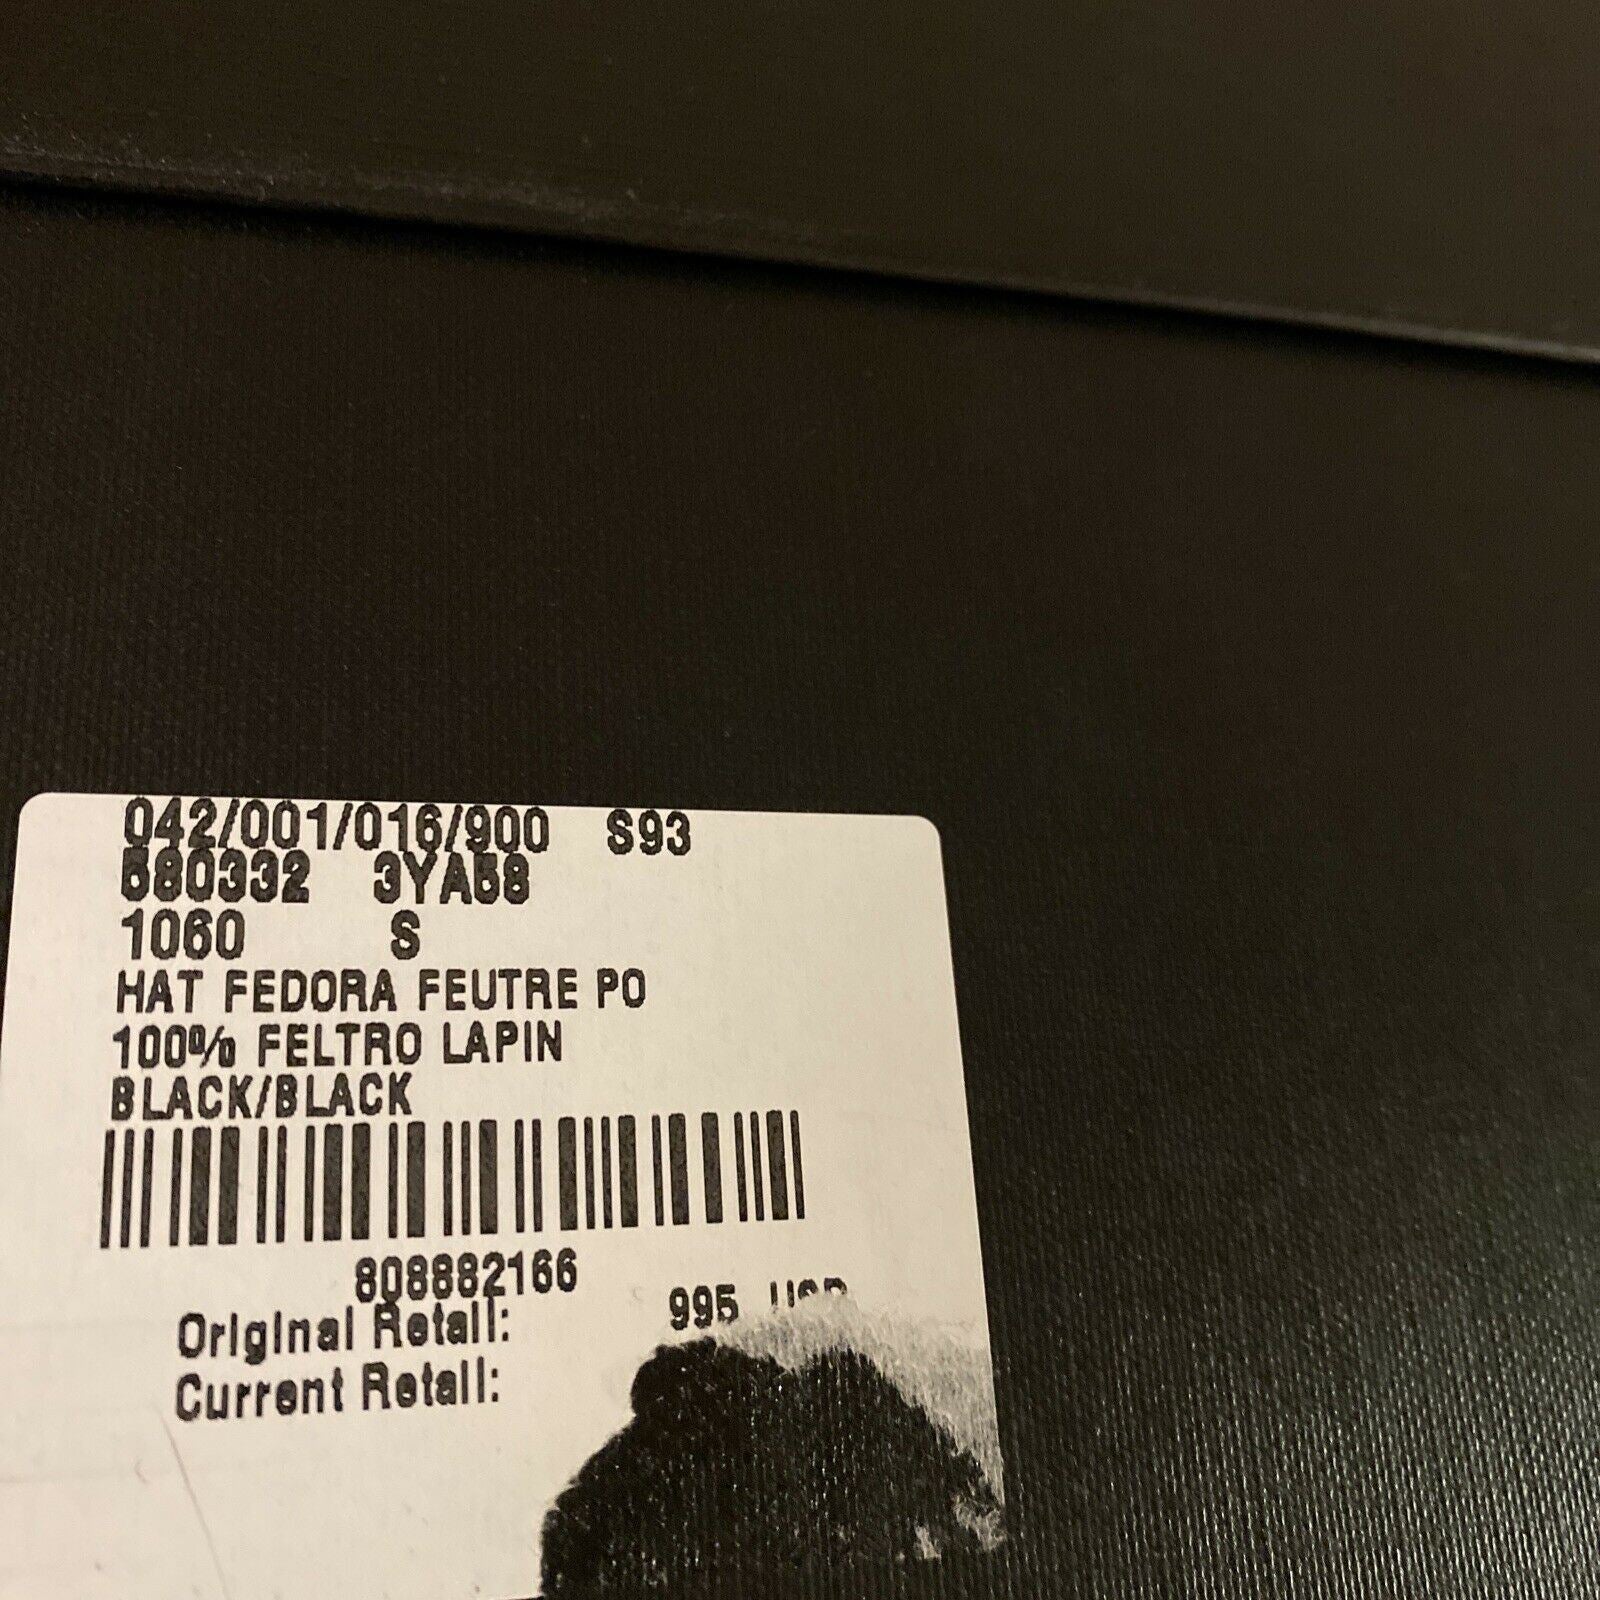 NWT $995 Saint Laurent Men Shaggy Felt Fedora Hat Black Size S Italy